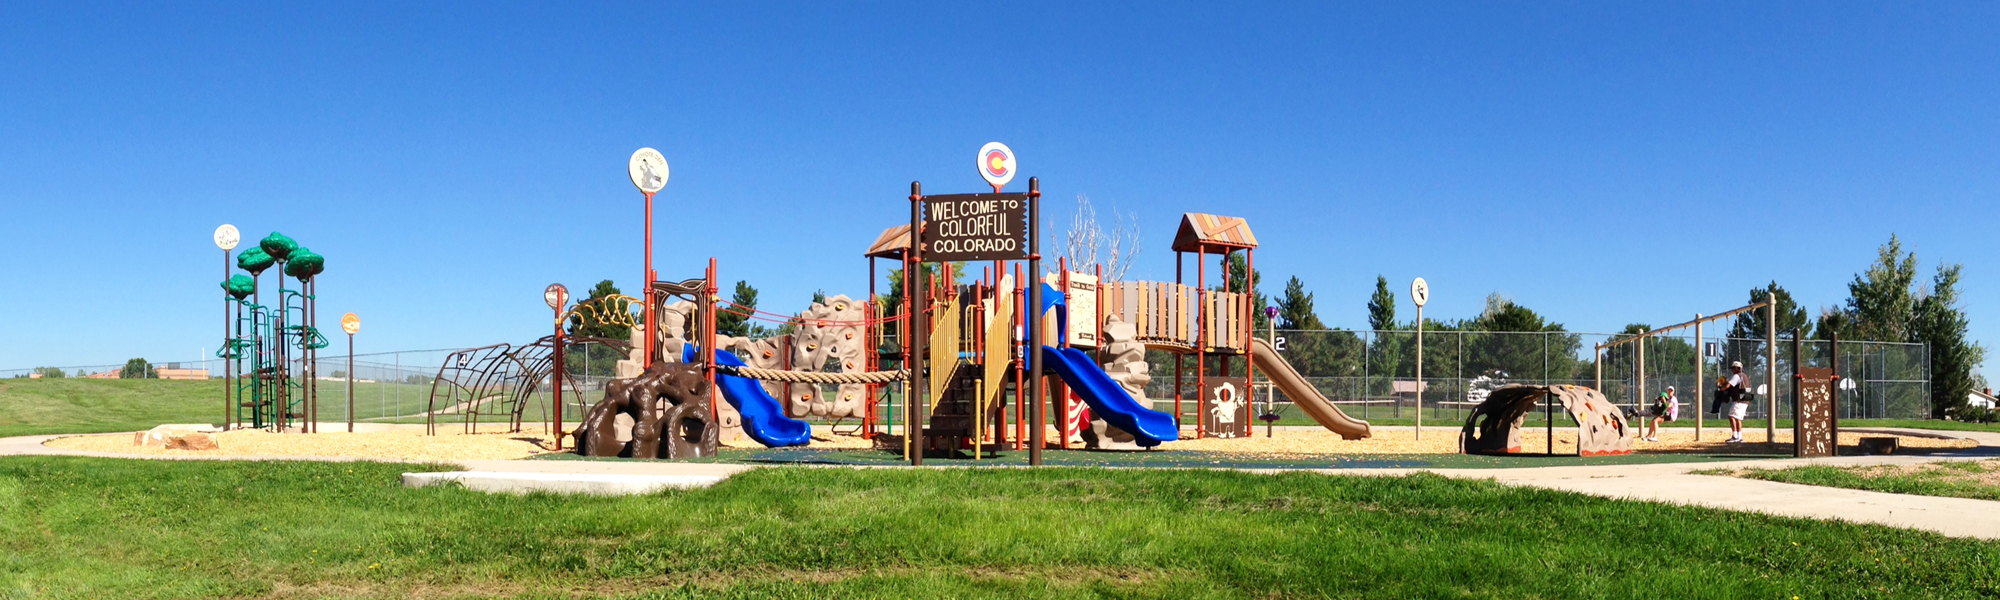 Lilley Gulch Recreation Center Park playground.